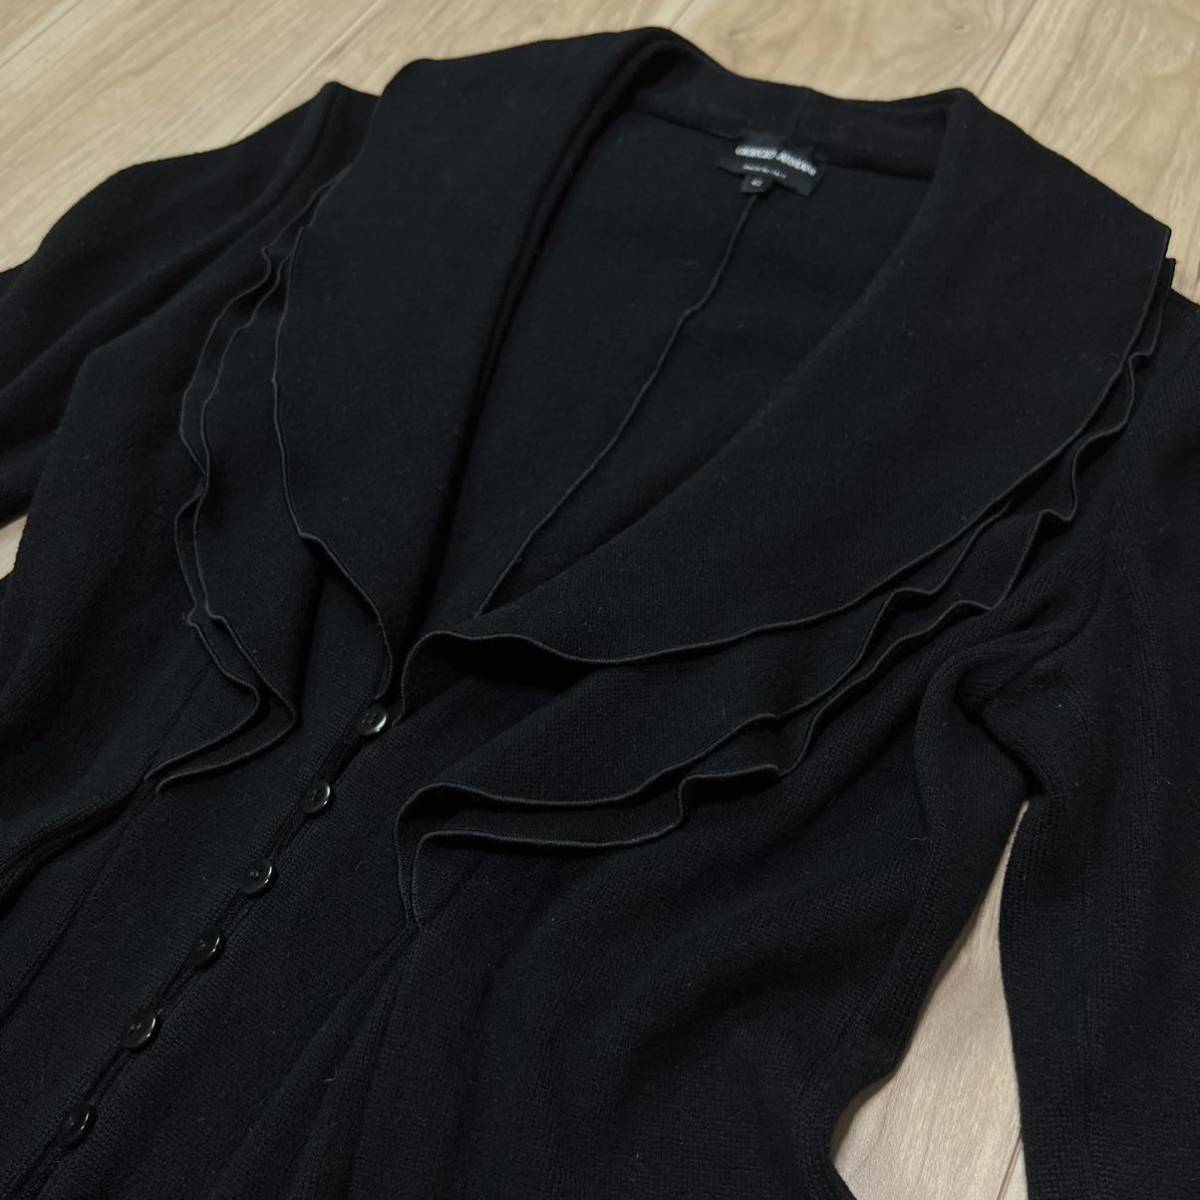 【高級】GIORGIO ARMANI ジョルジオアルマーニ フリル襟 デザイン ニットジャケット セーター テーラード レディース 黒 サイズ42 R-5049_画像2